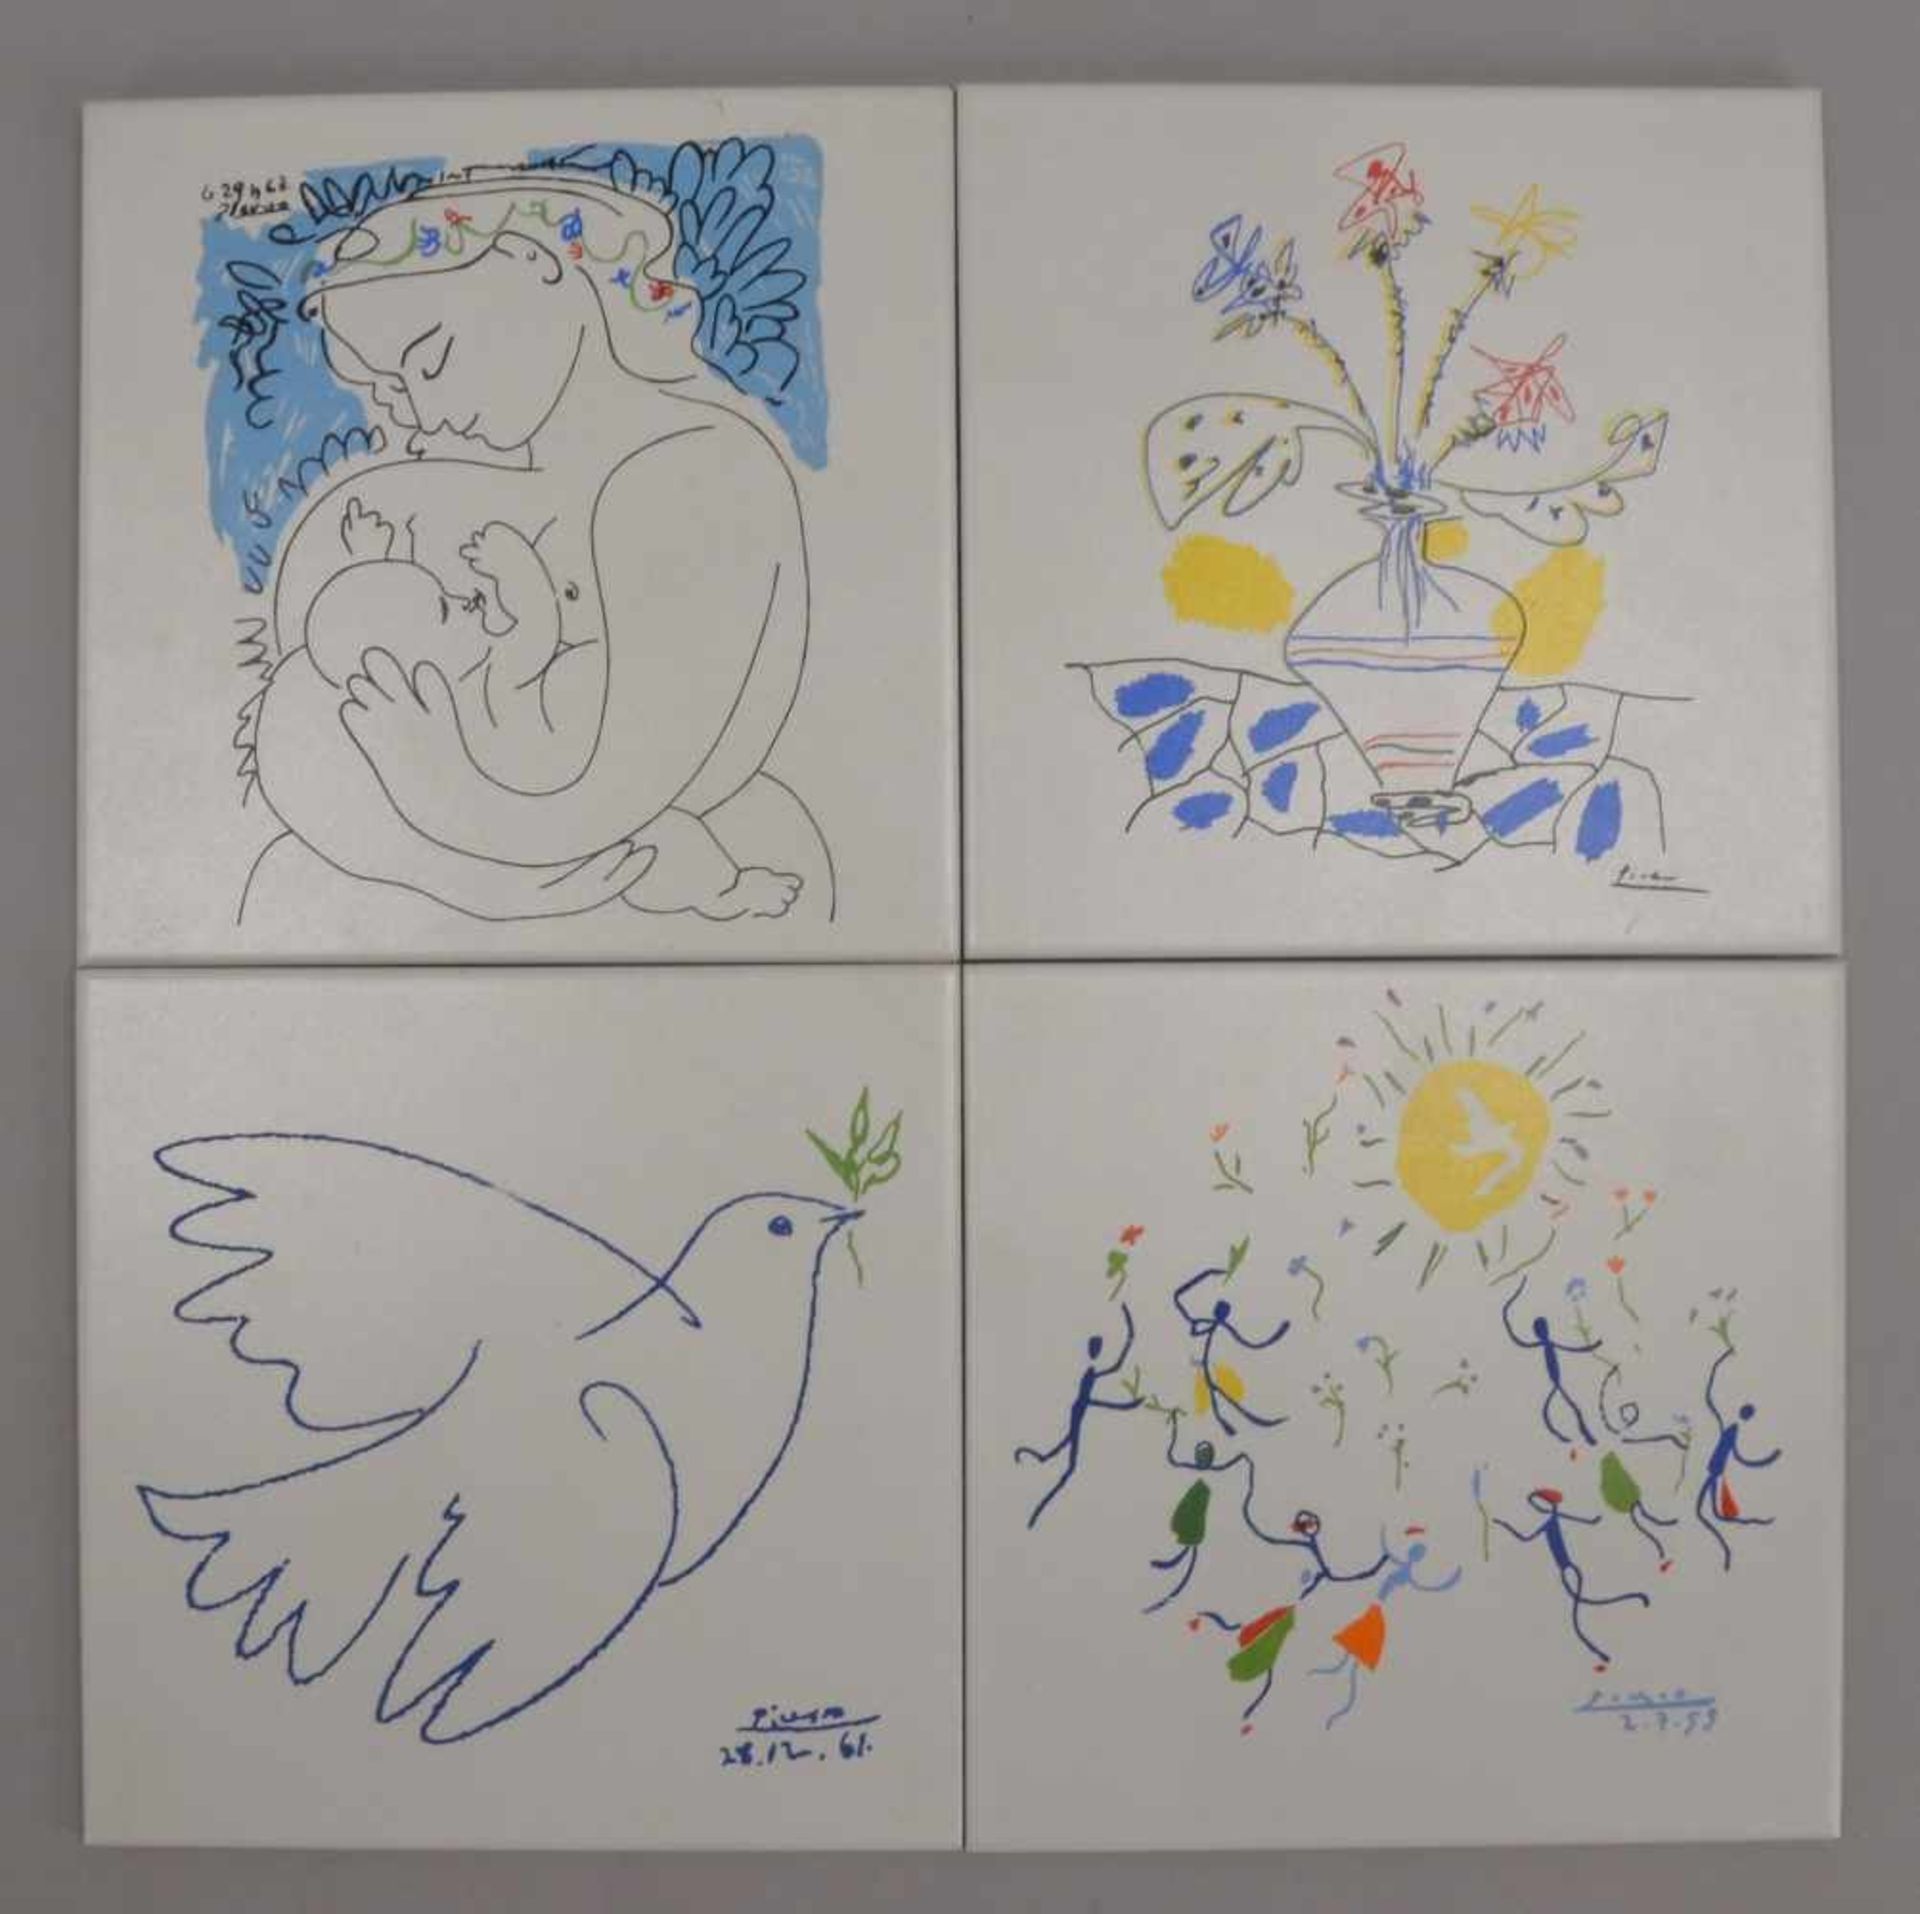 Zirconio/Spanien, 4x Keramikfliesen, mit Siebdruck, 'Picasso'-Motiv, in limitierter Auflage, 4